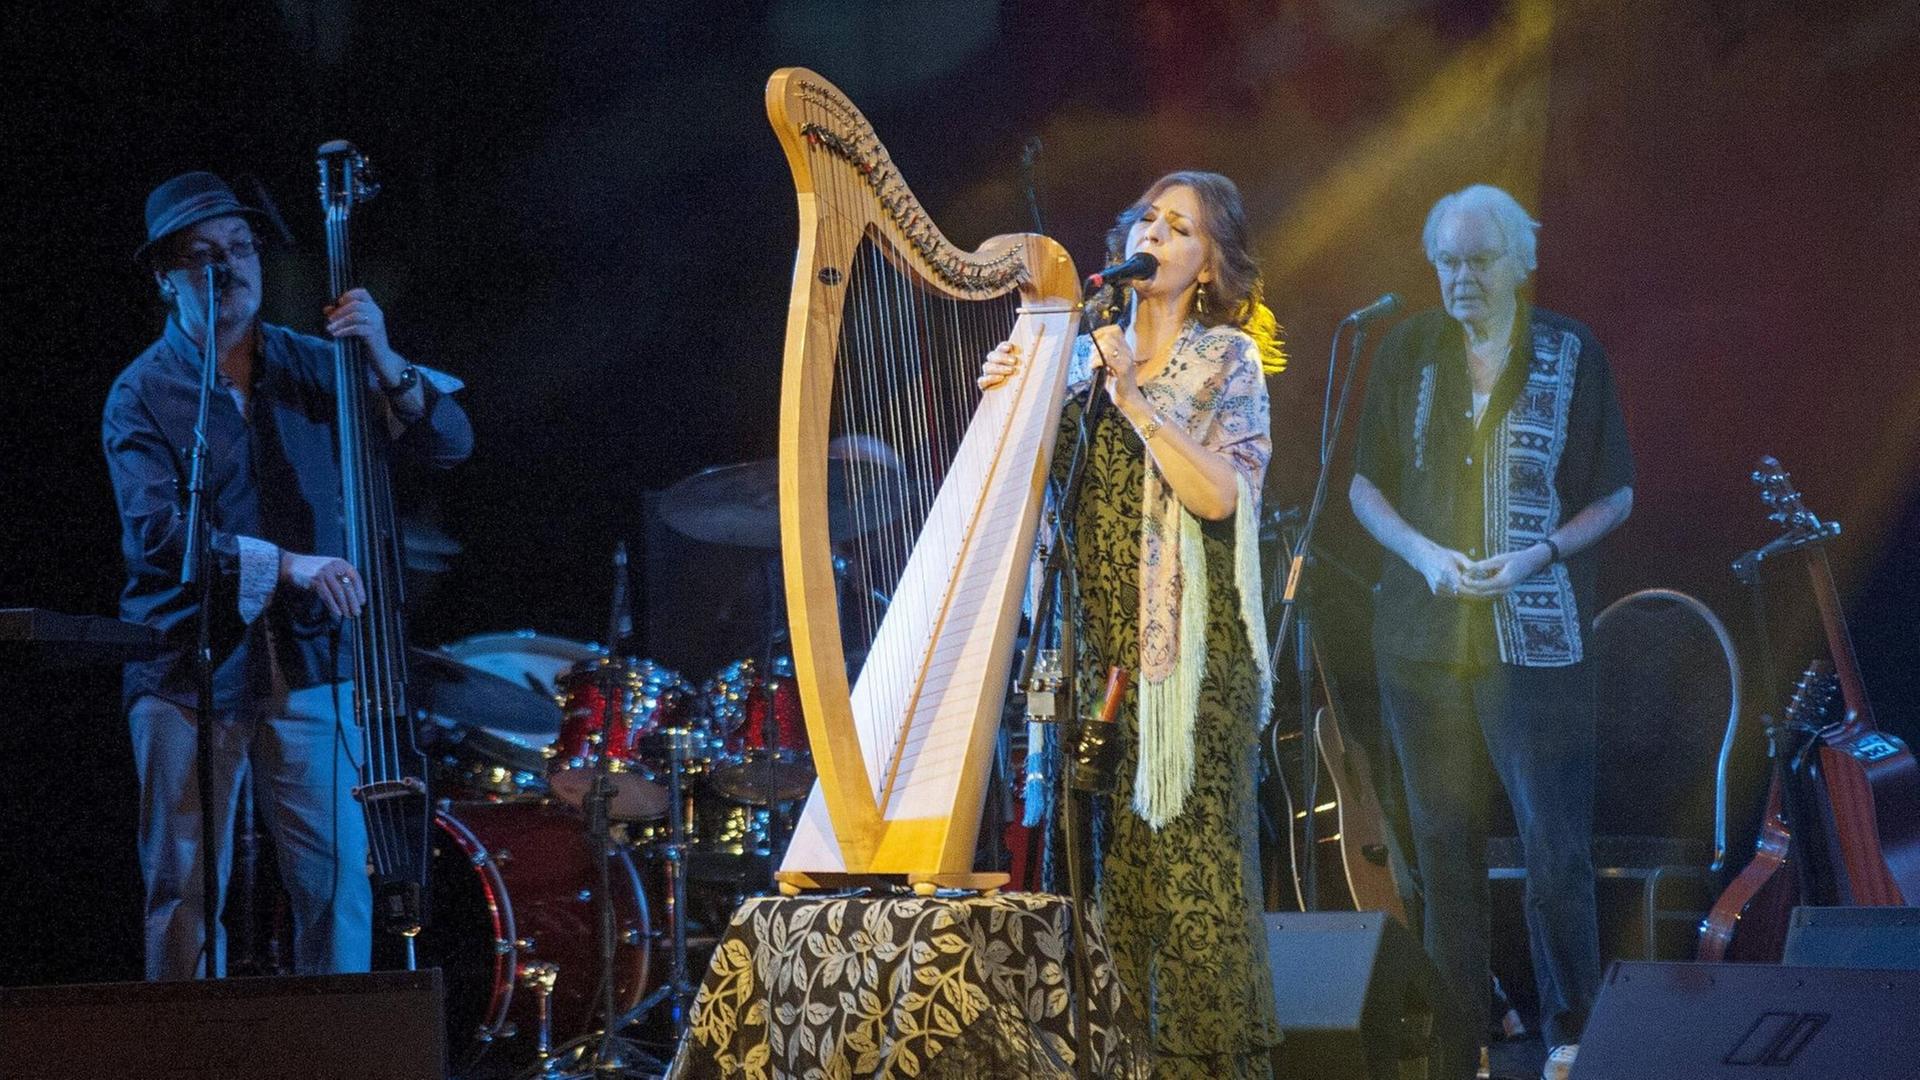 Eine Frau und zwei Männer stehen auf einer Bühne. Die Frau spielt eine Harfe.